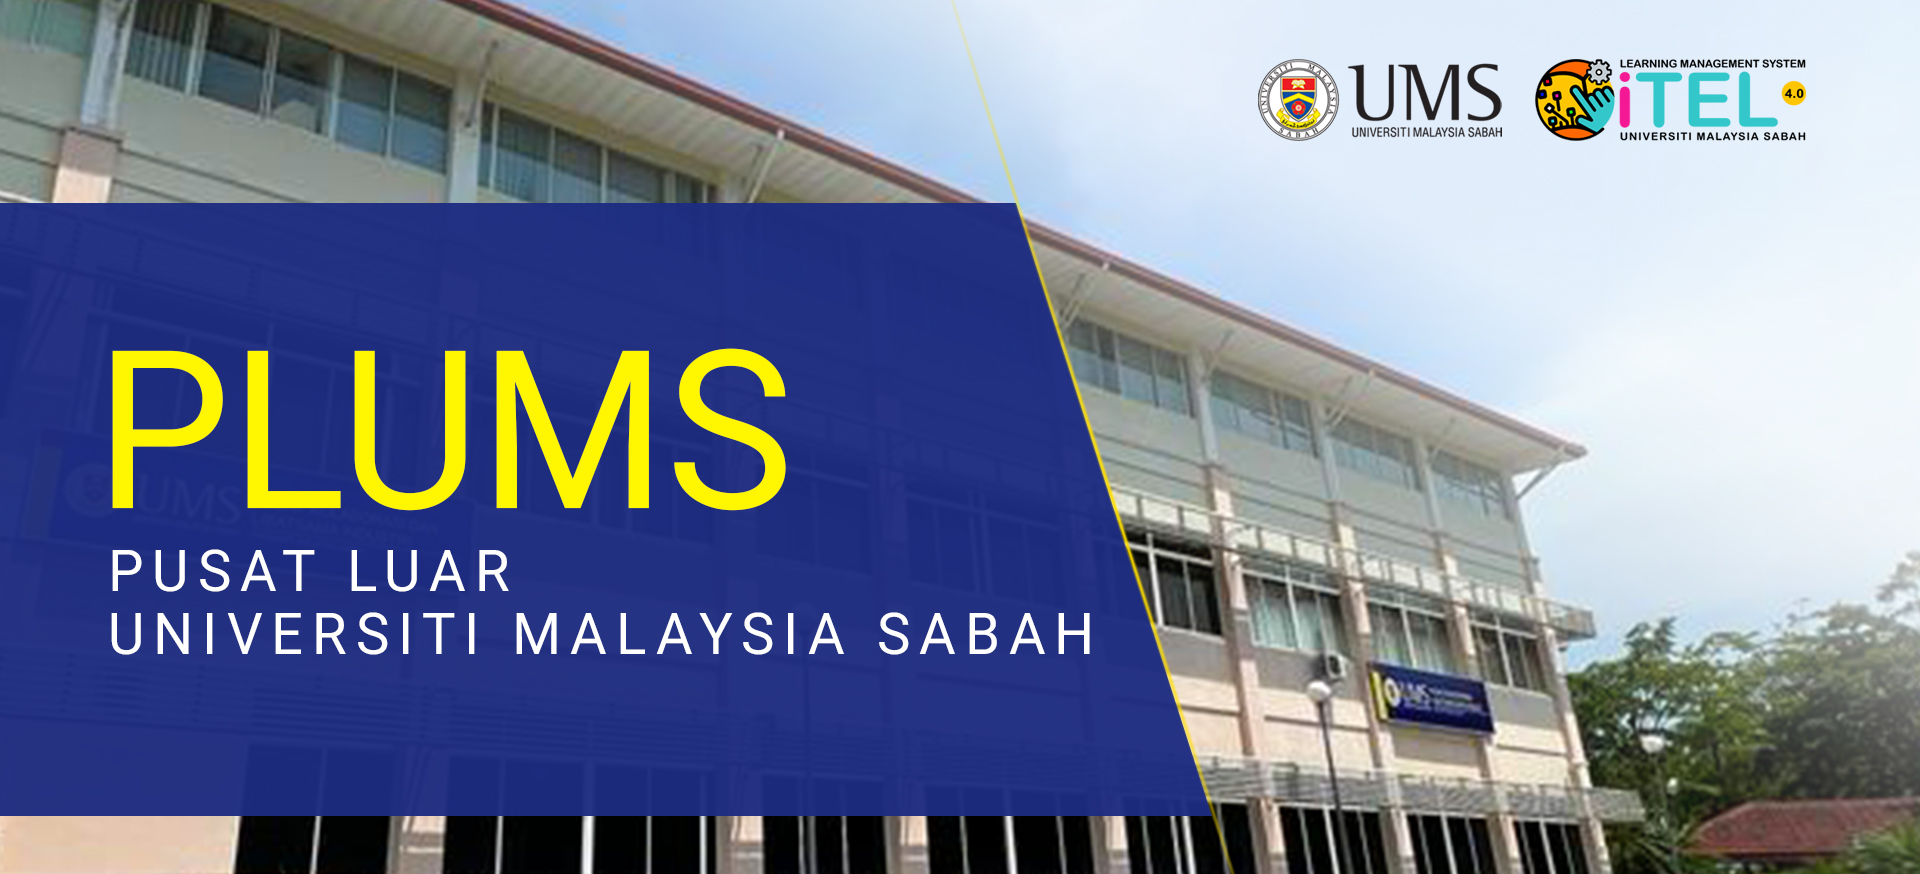 Pusat Luar Universiti Malaysia Sabah (PLUMS)